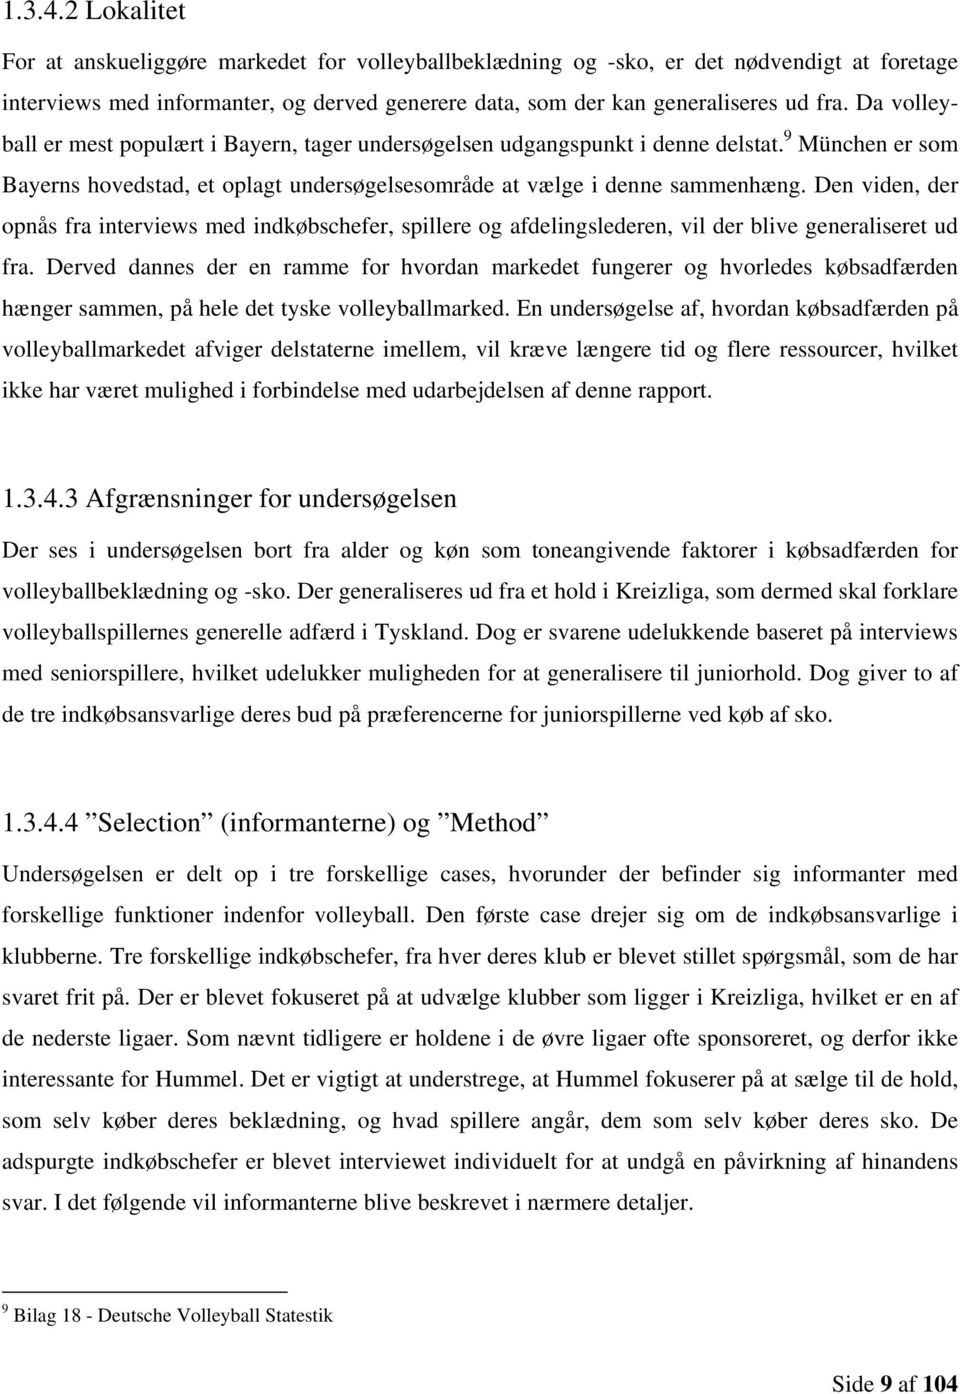 Hummels potentielle indtrængning på det tyske marked for  volleyballbeklædning og -sko - PDF Gratis download